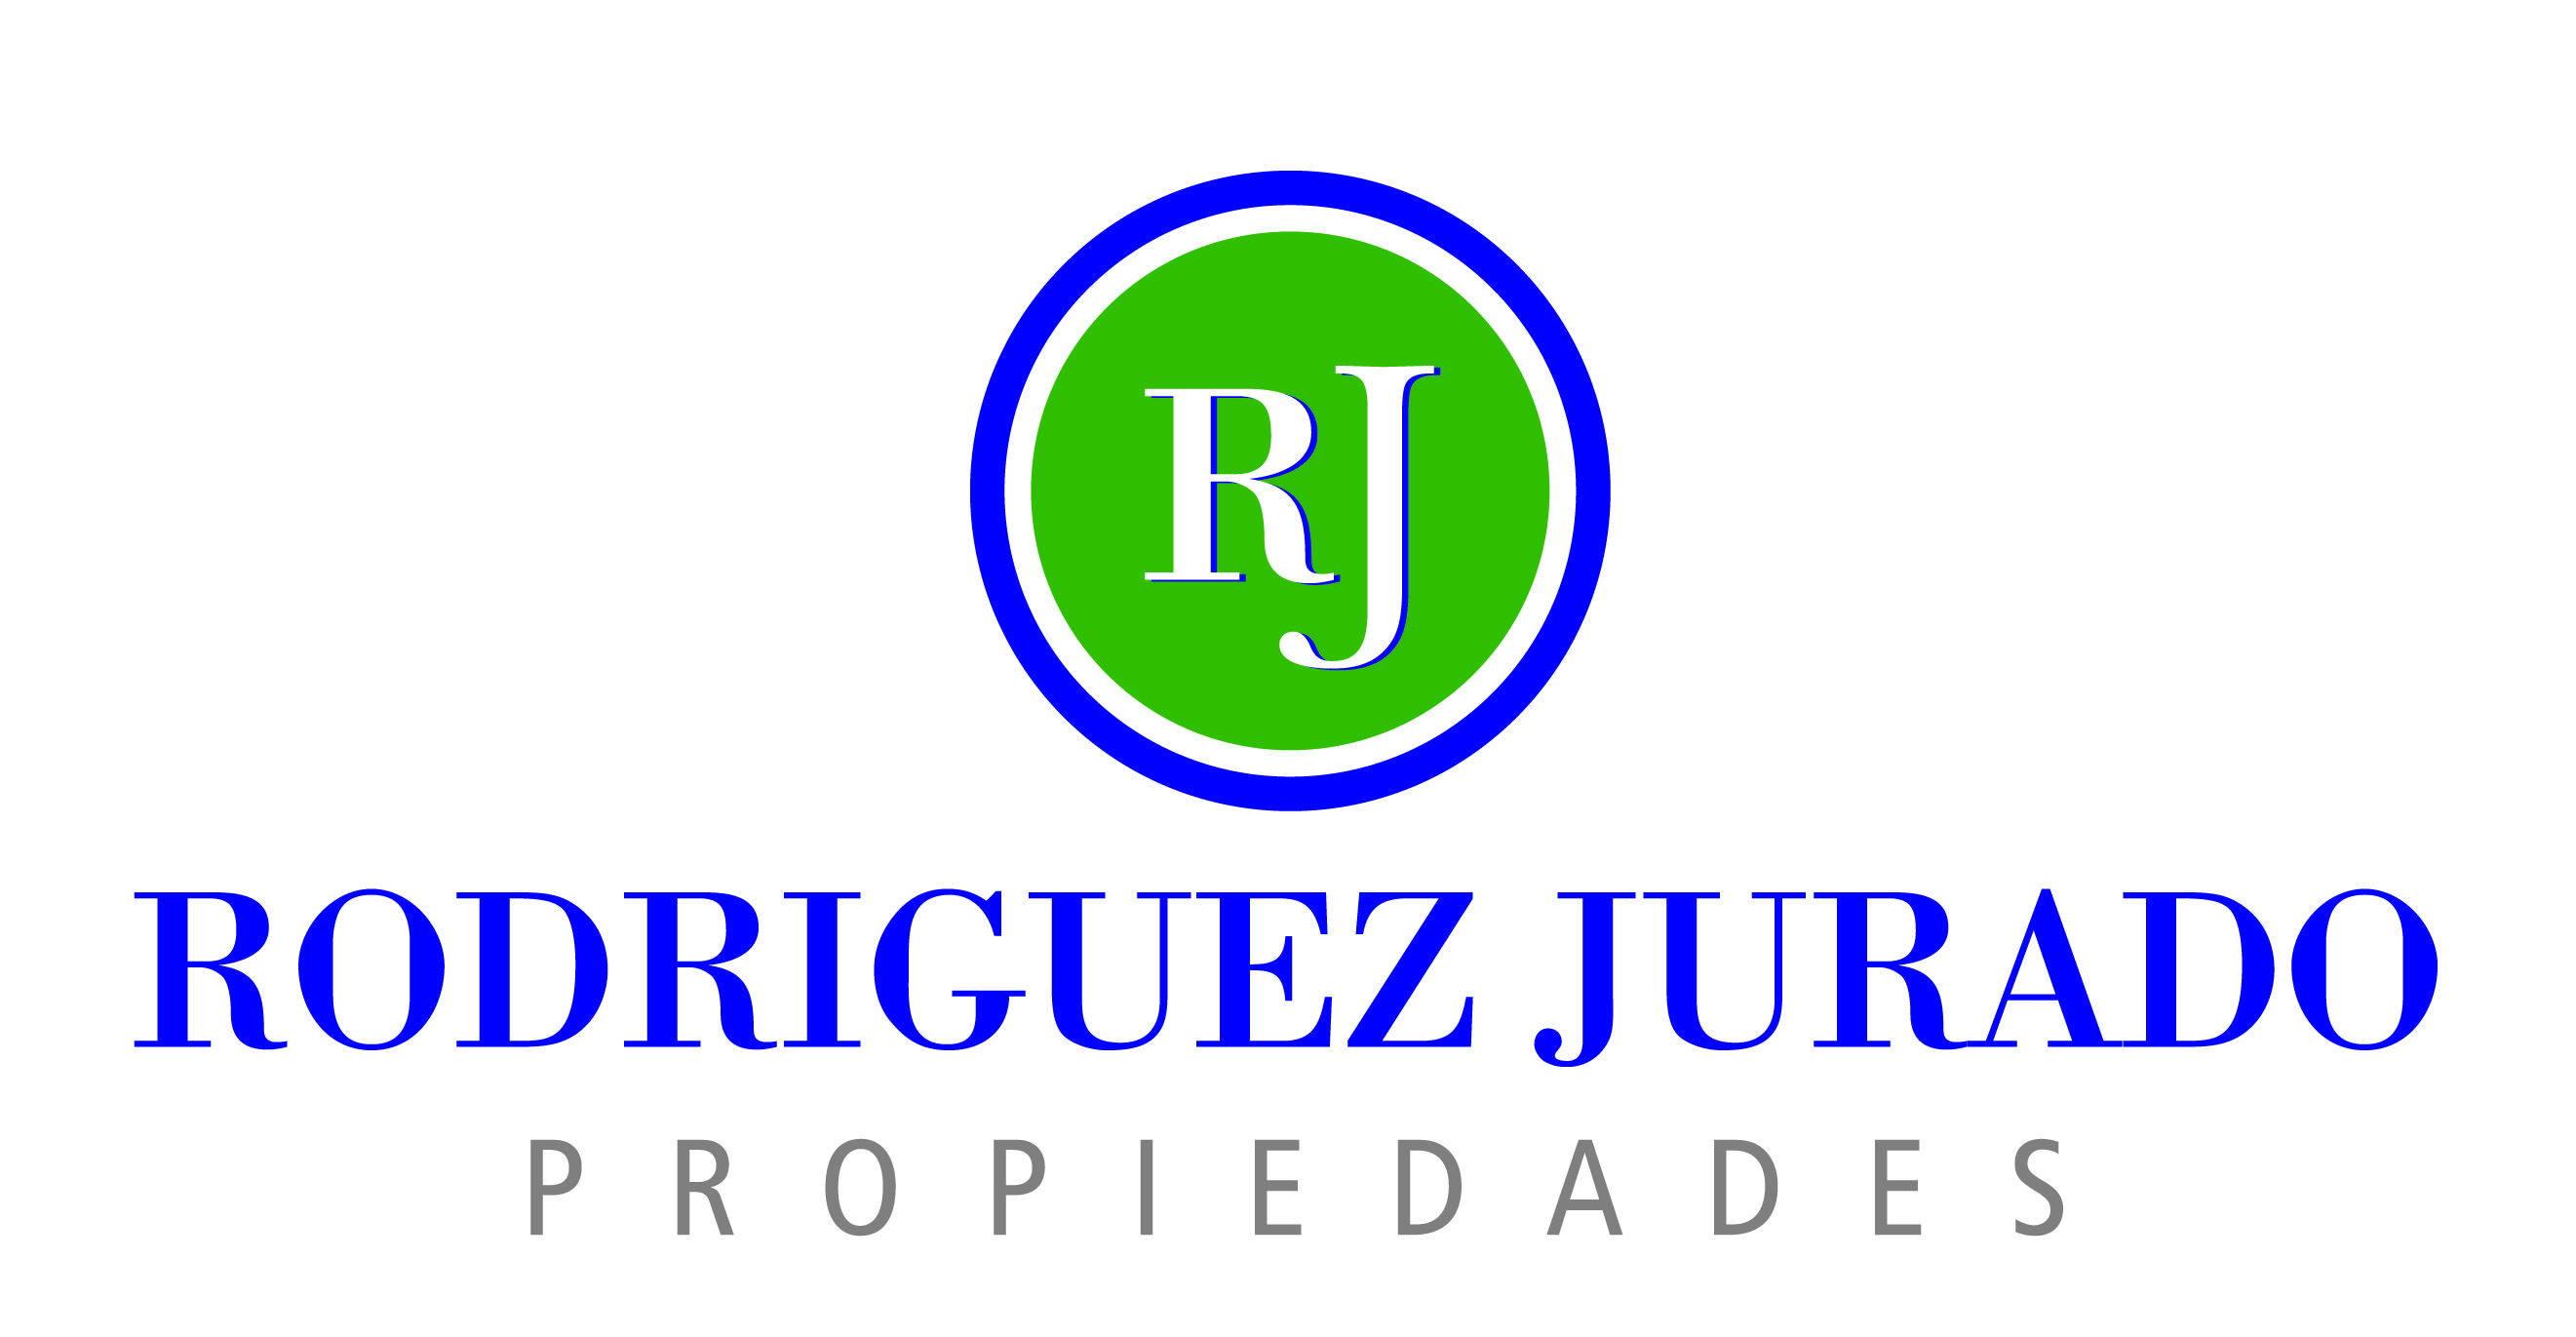 Rodriguez Jurado Propiedades